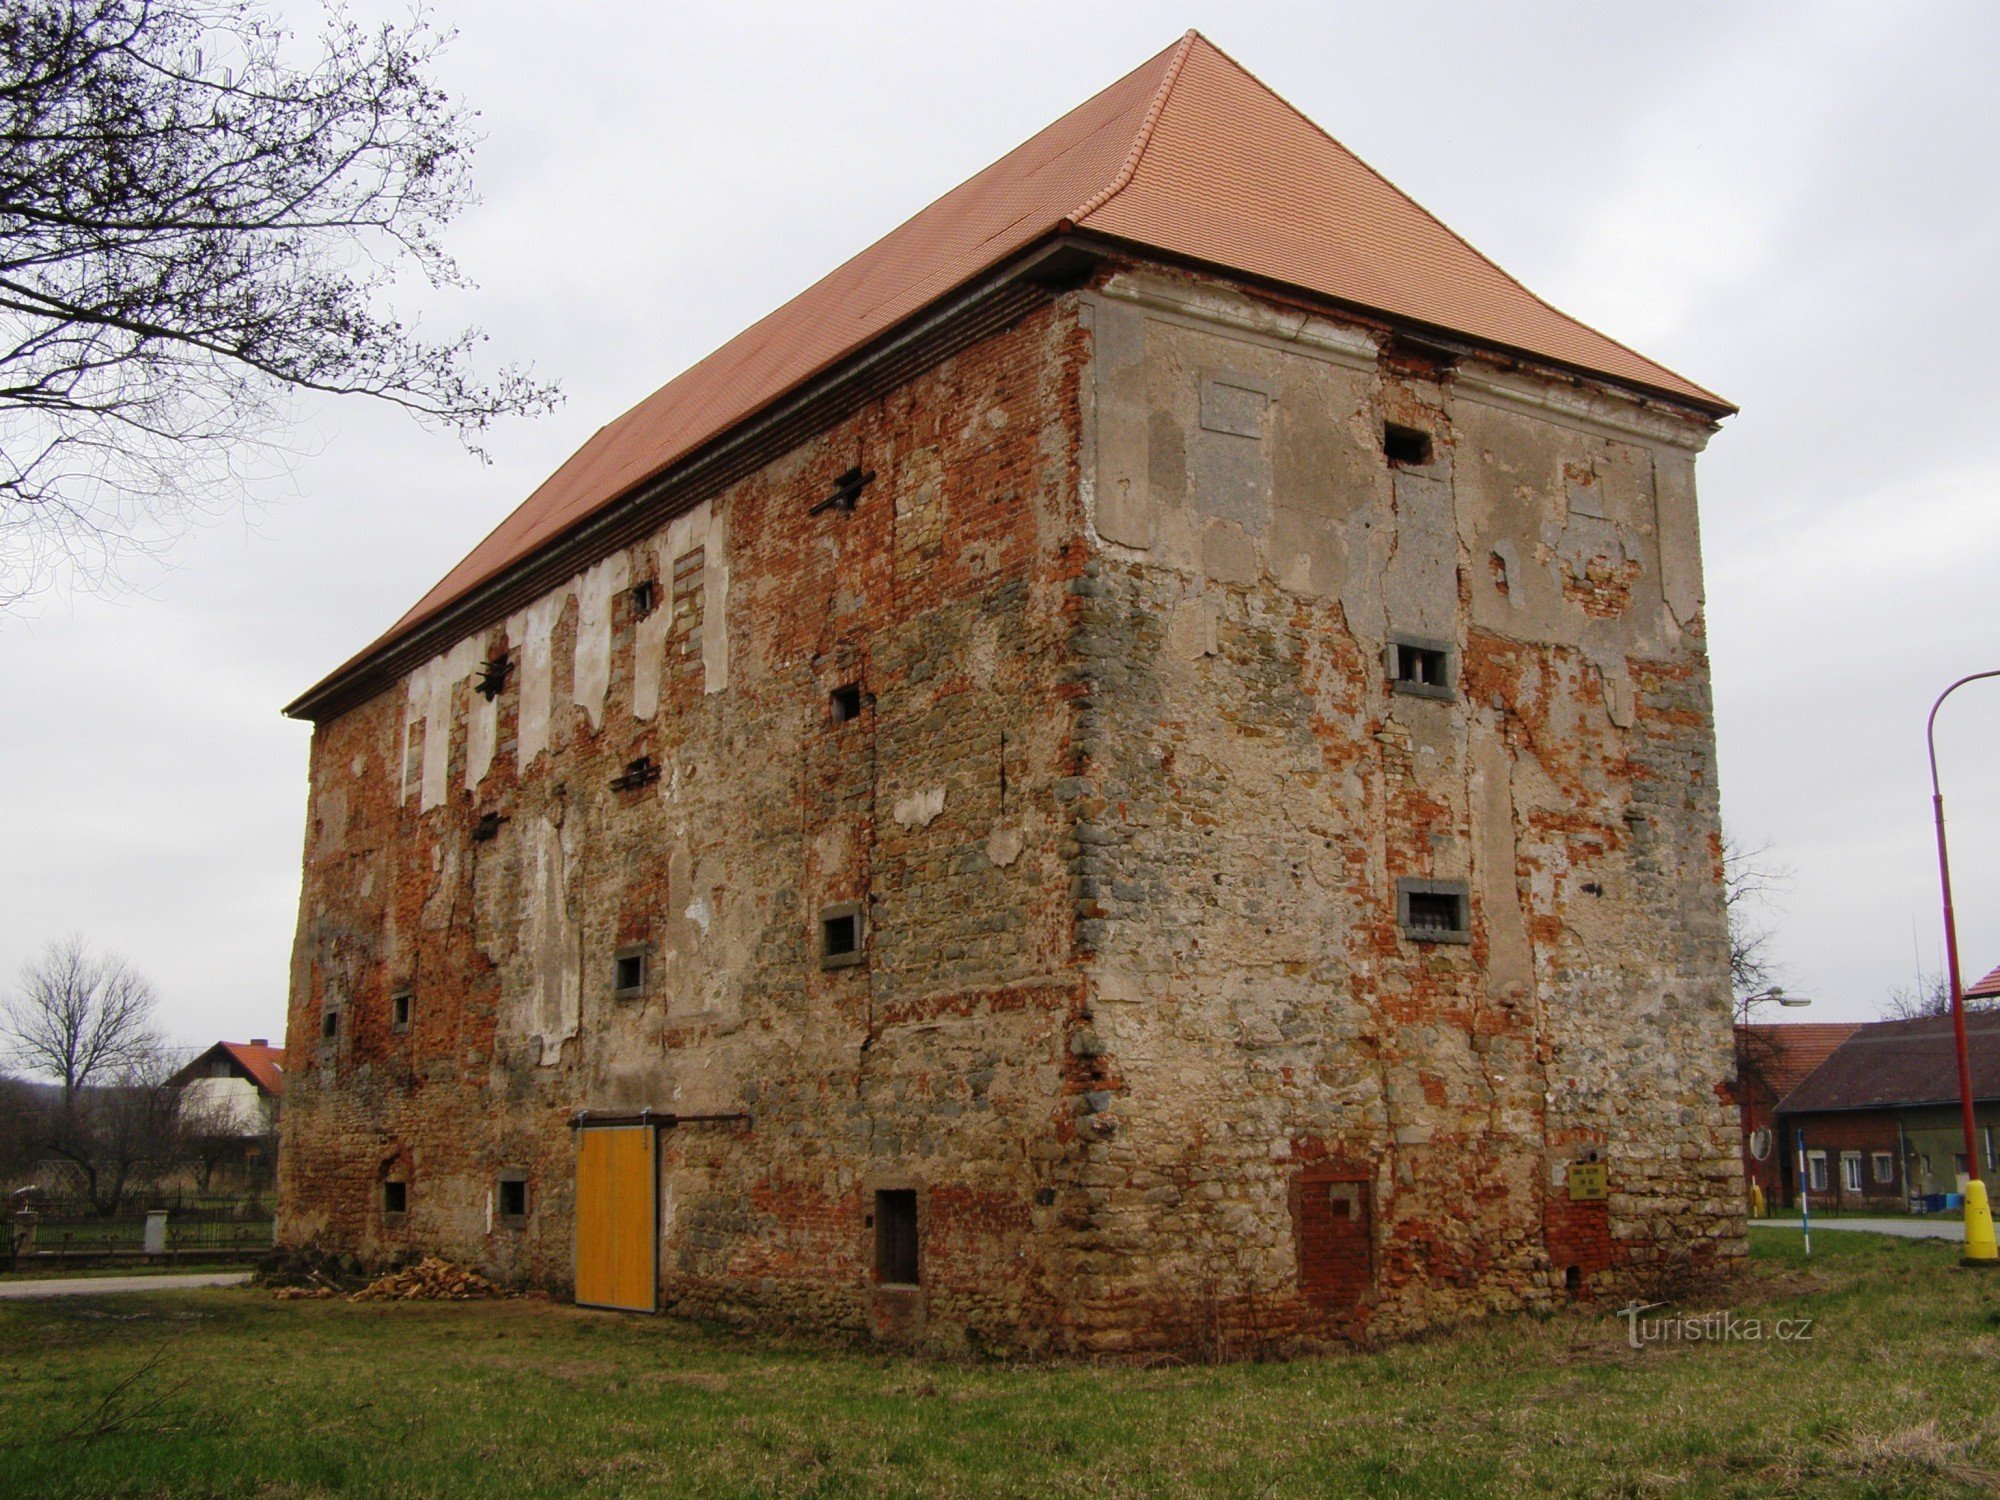 Dohalice - fort, graanschuur